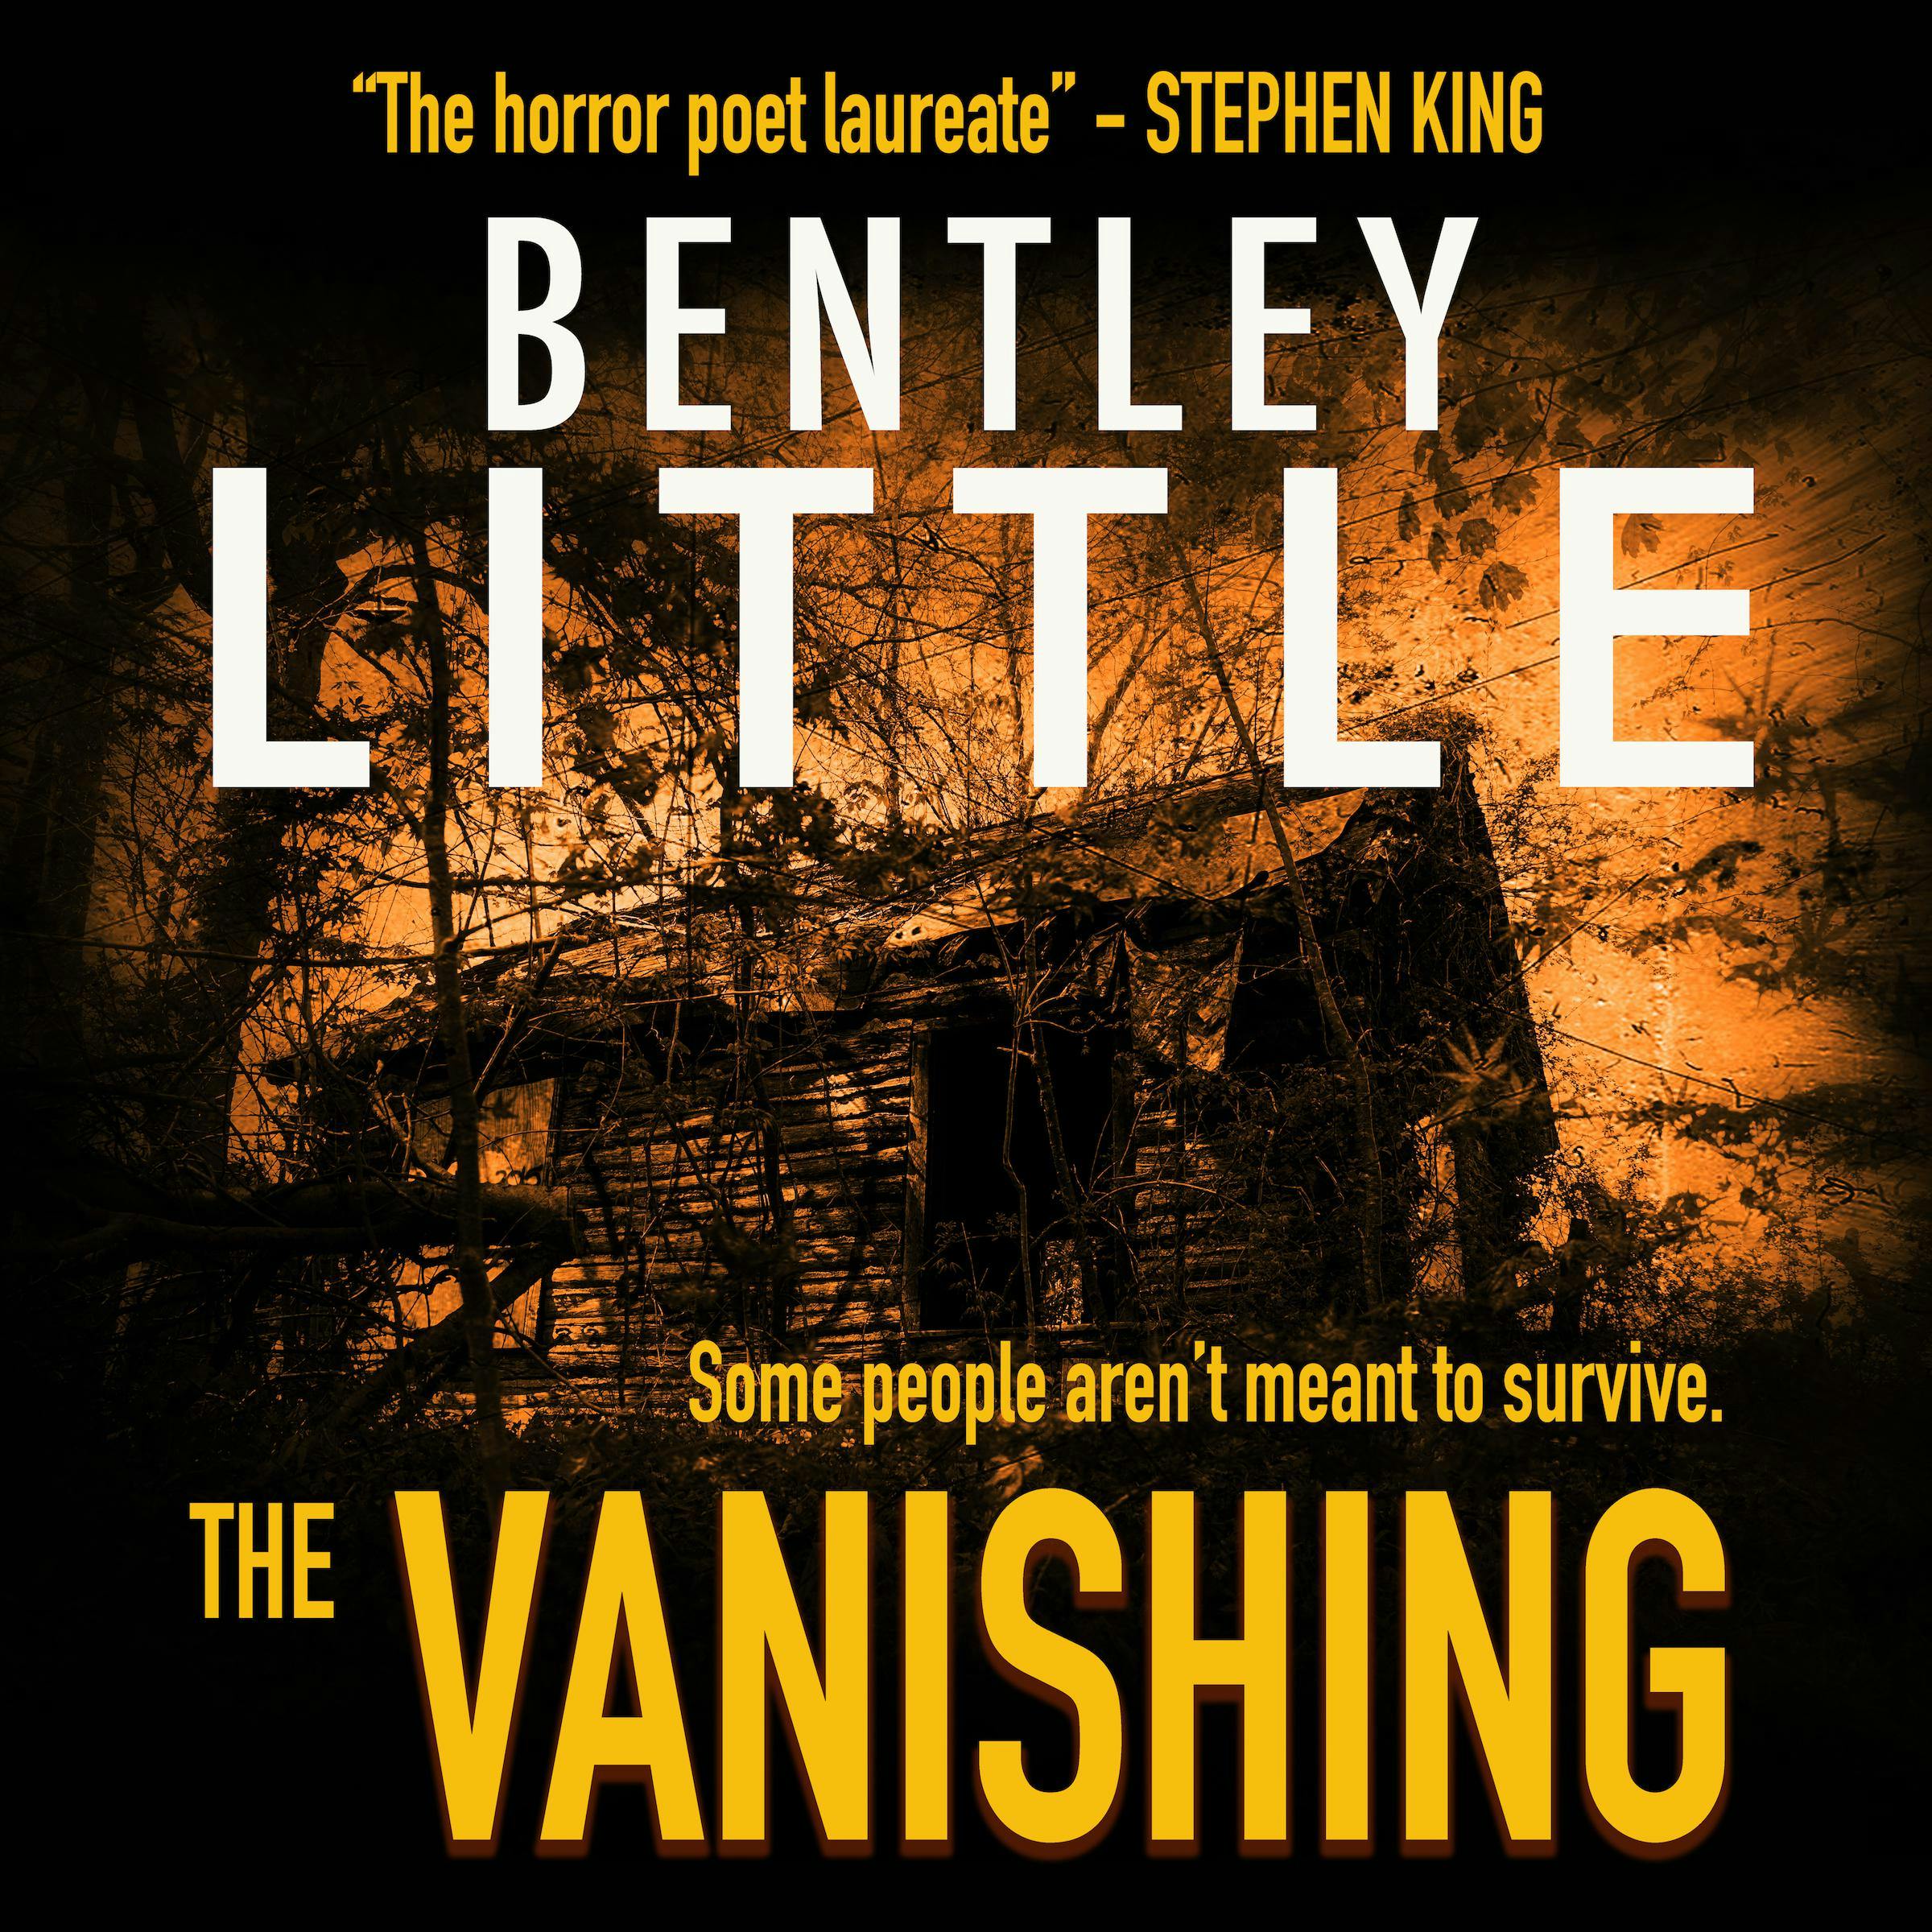 The Vanishing - Bentley Little